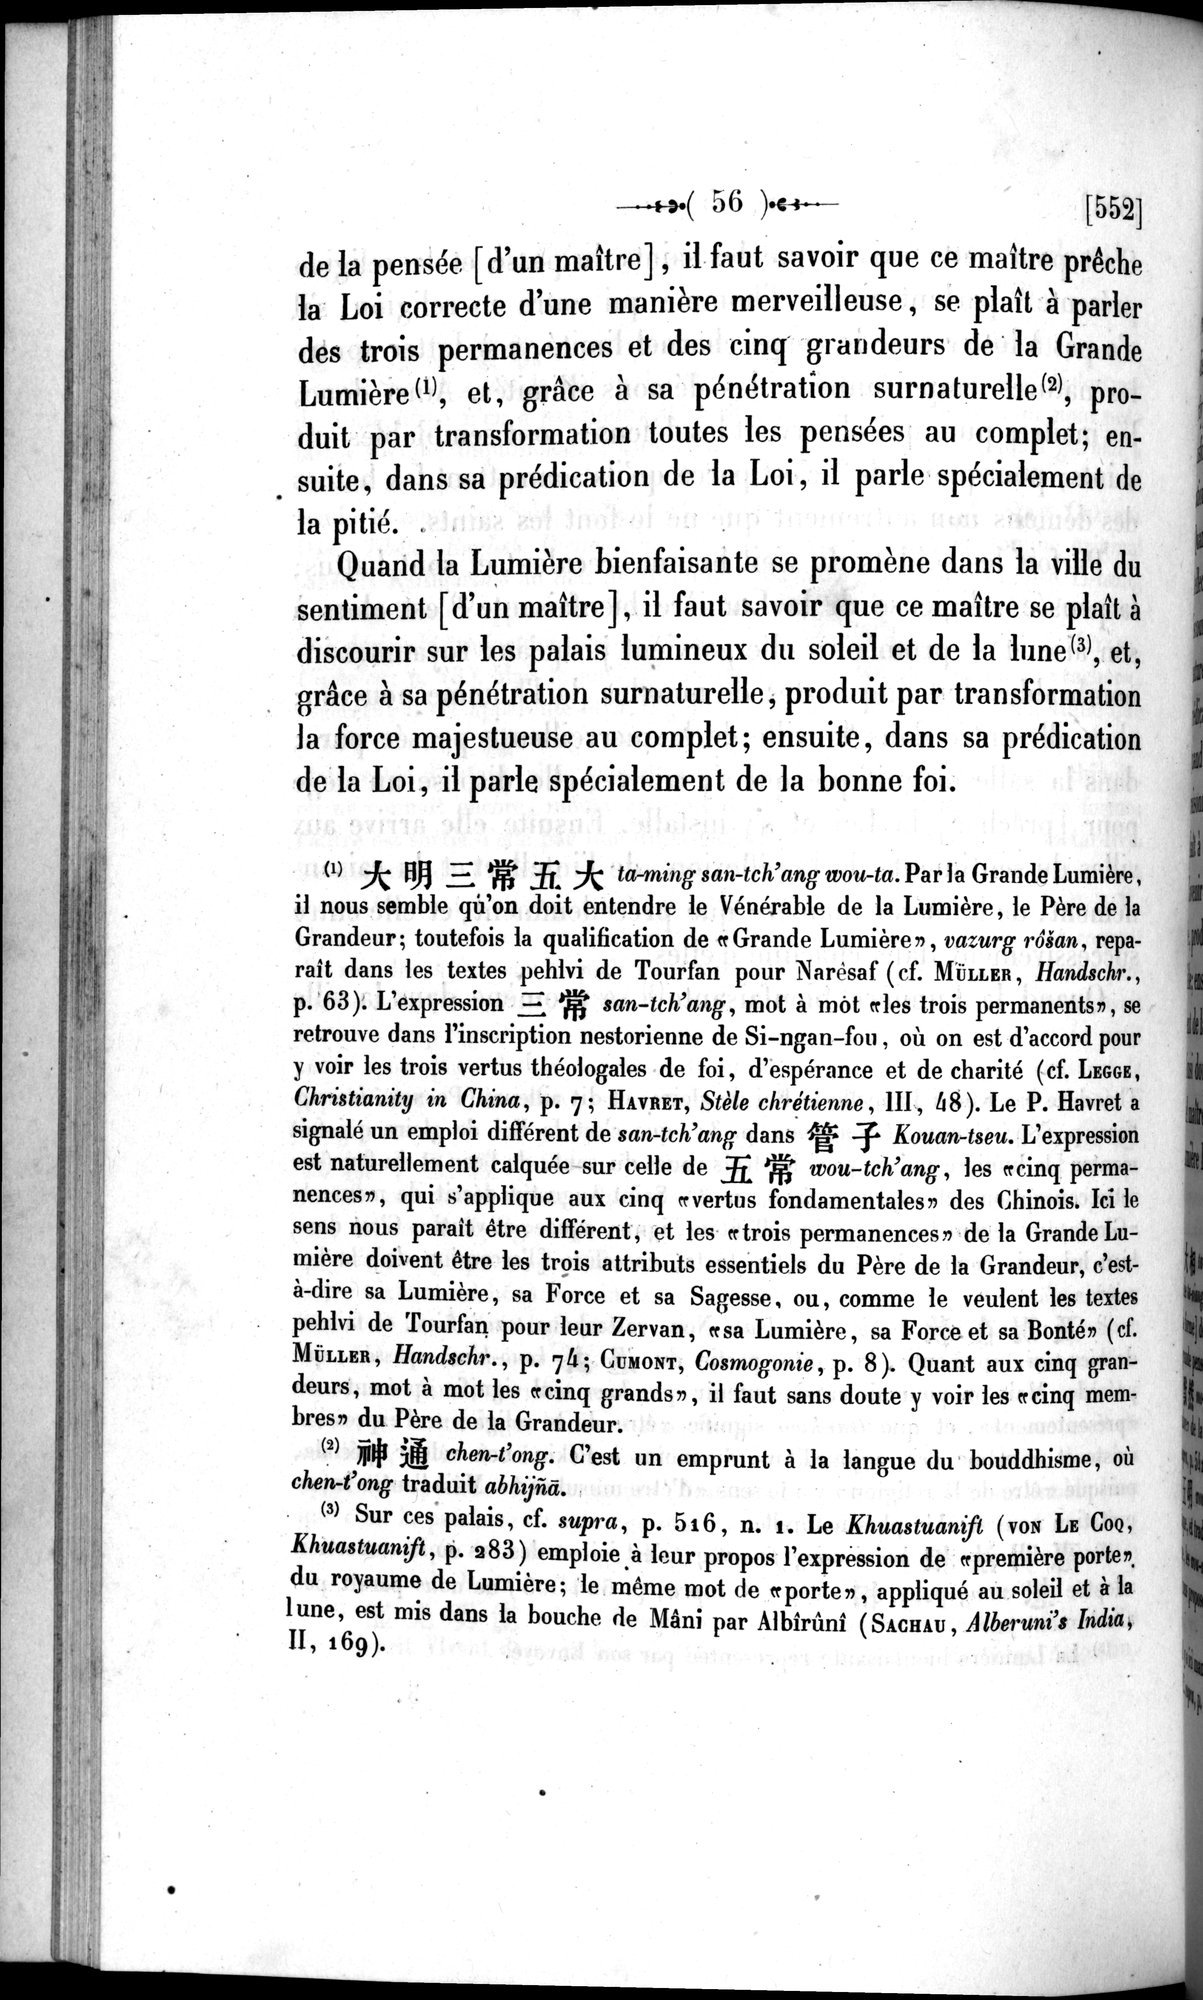 Un traité manichéen retrouvé en Chine : vol.1 / Page 66 (Grayscale High Resolution Image)